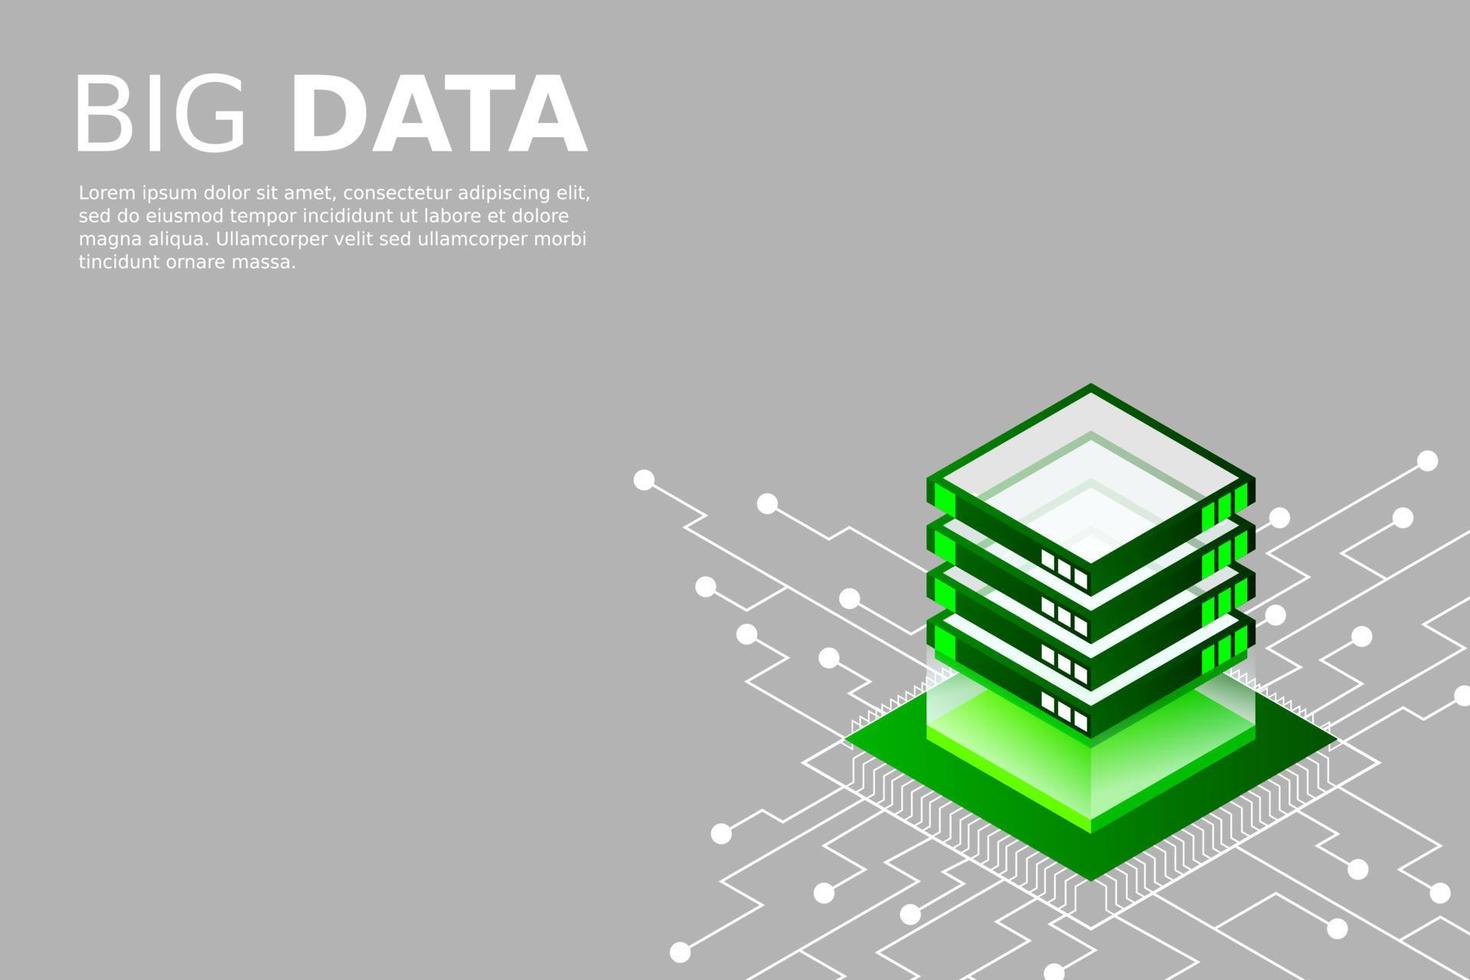 concept van big data-verwerkingsenergiestation van toekomstig serverruimterek datacenter vector